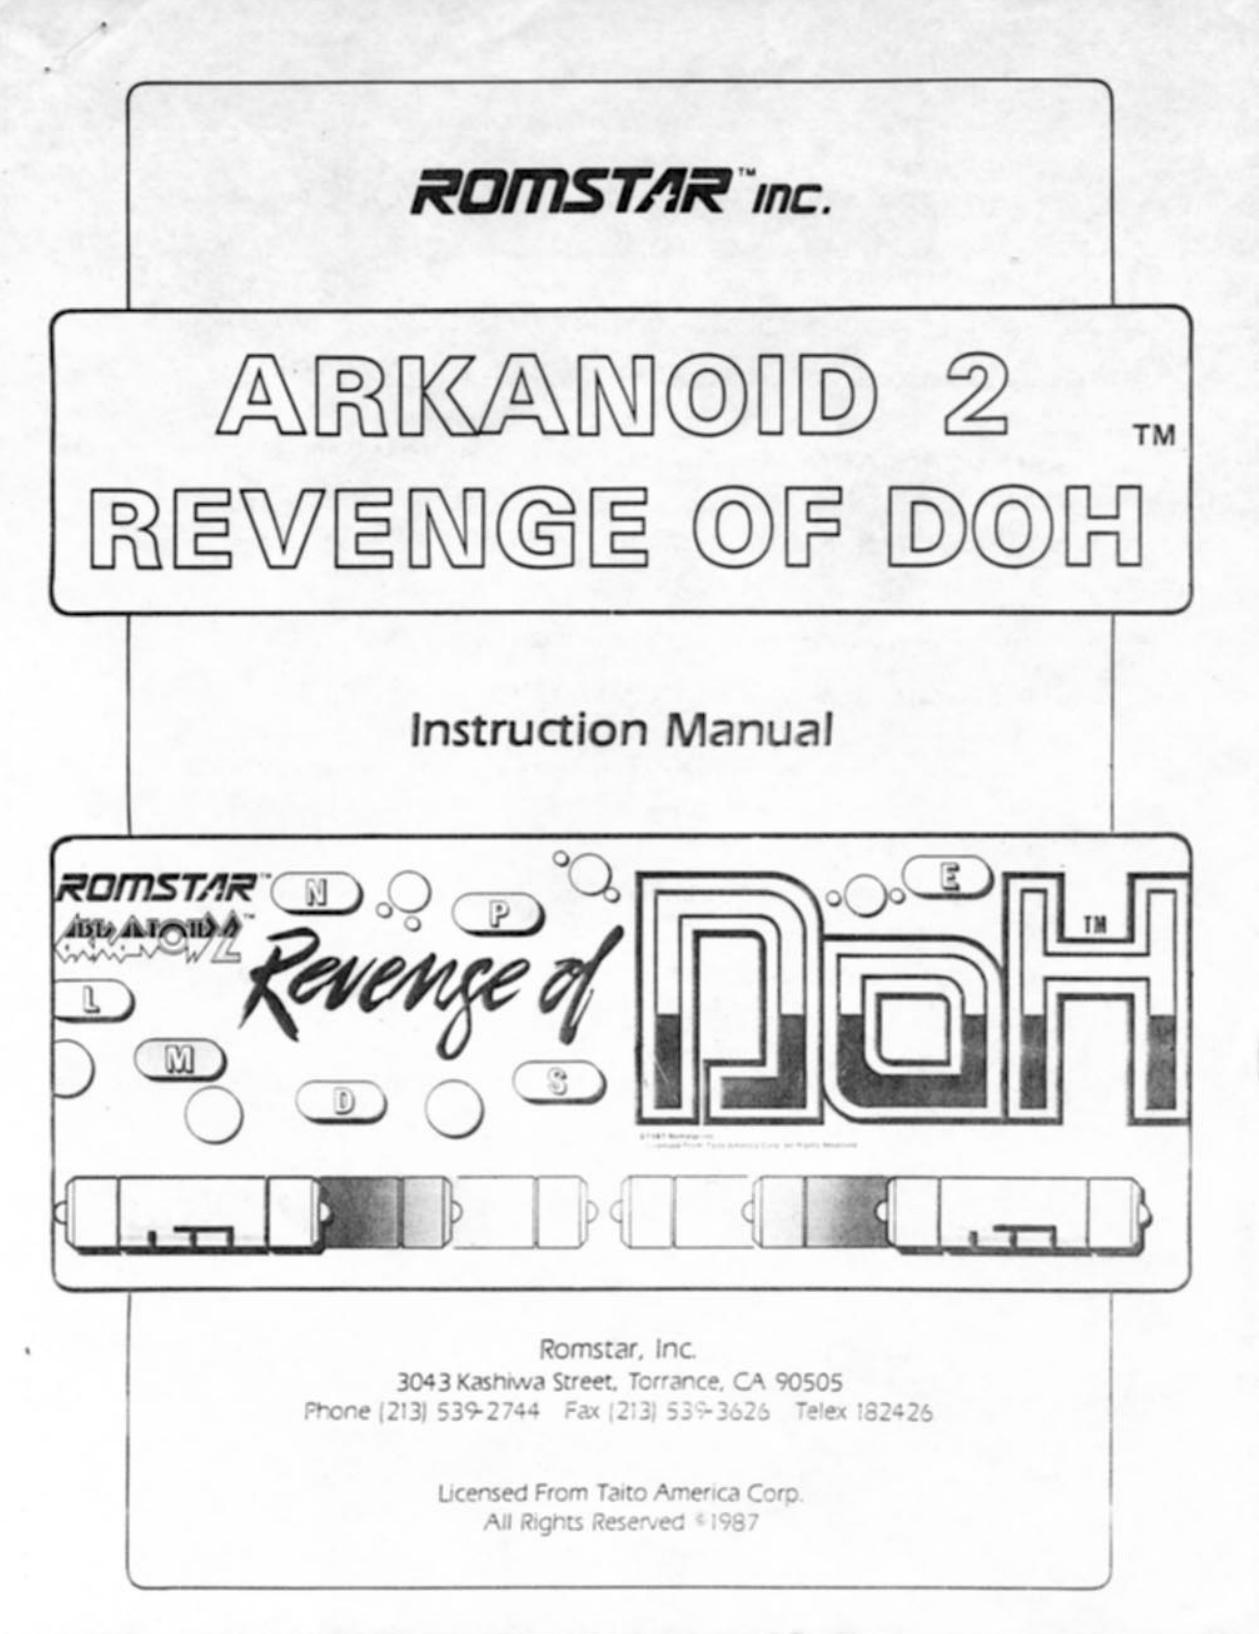 Arkanoid 2 Revenge of DOH